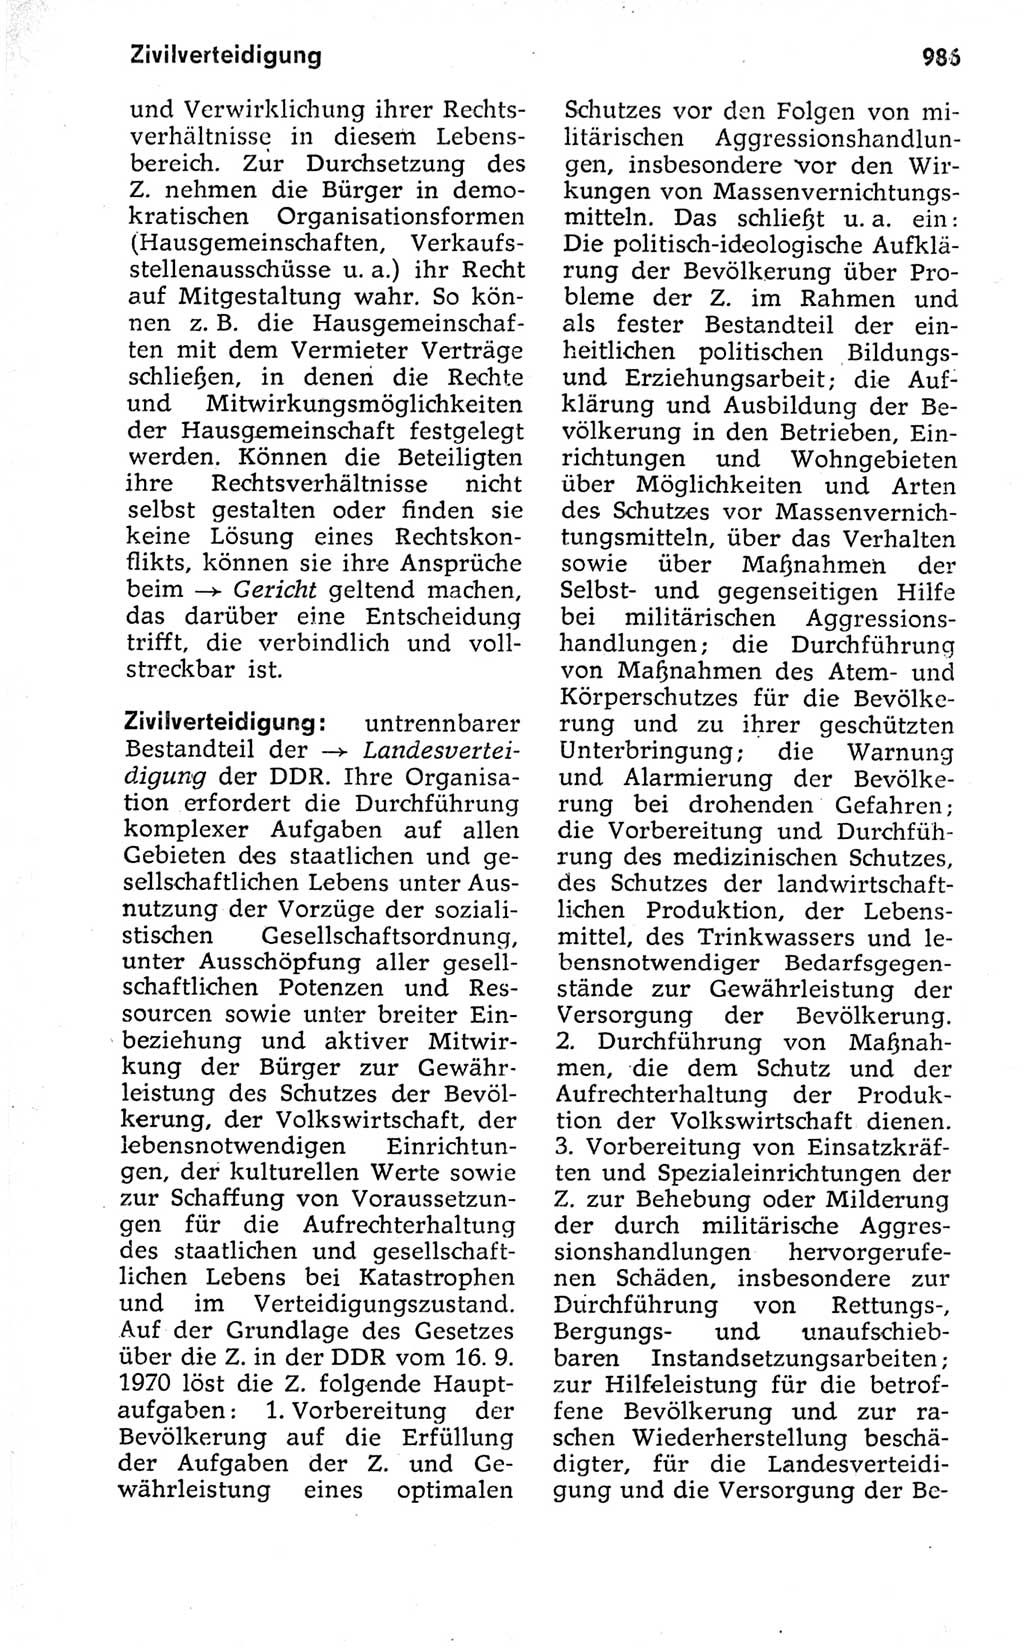 Kleines politisches Wörterbuch [Deutsche Demokratische Republik (DDR)] 1973, Seite 986 (Kl. pol. Wb. DDR 1973, S. 986)